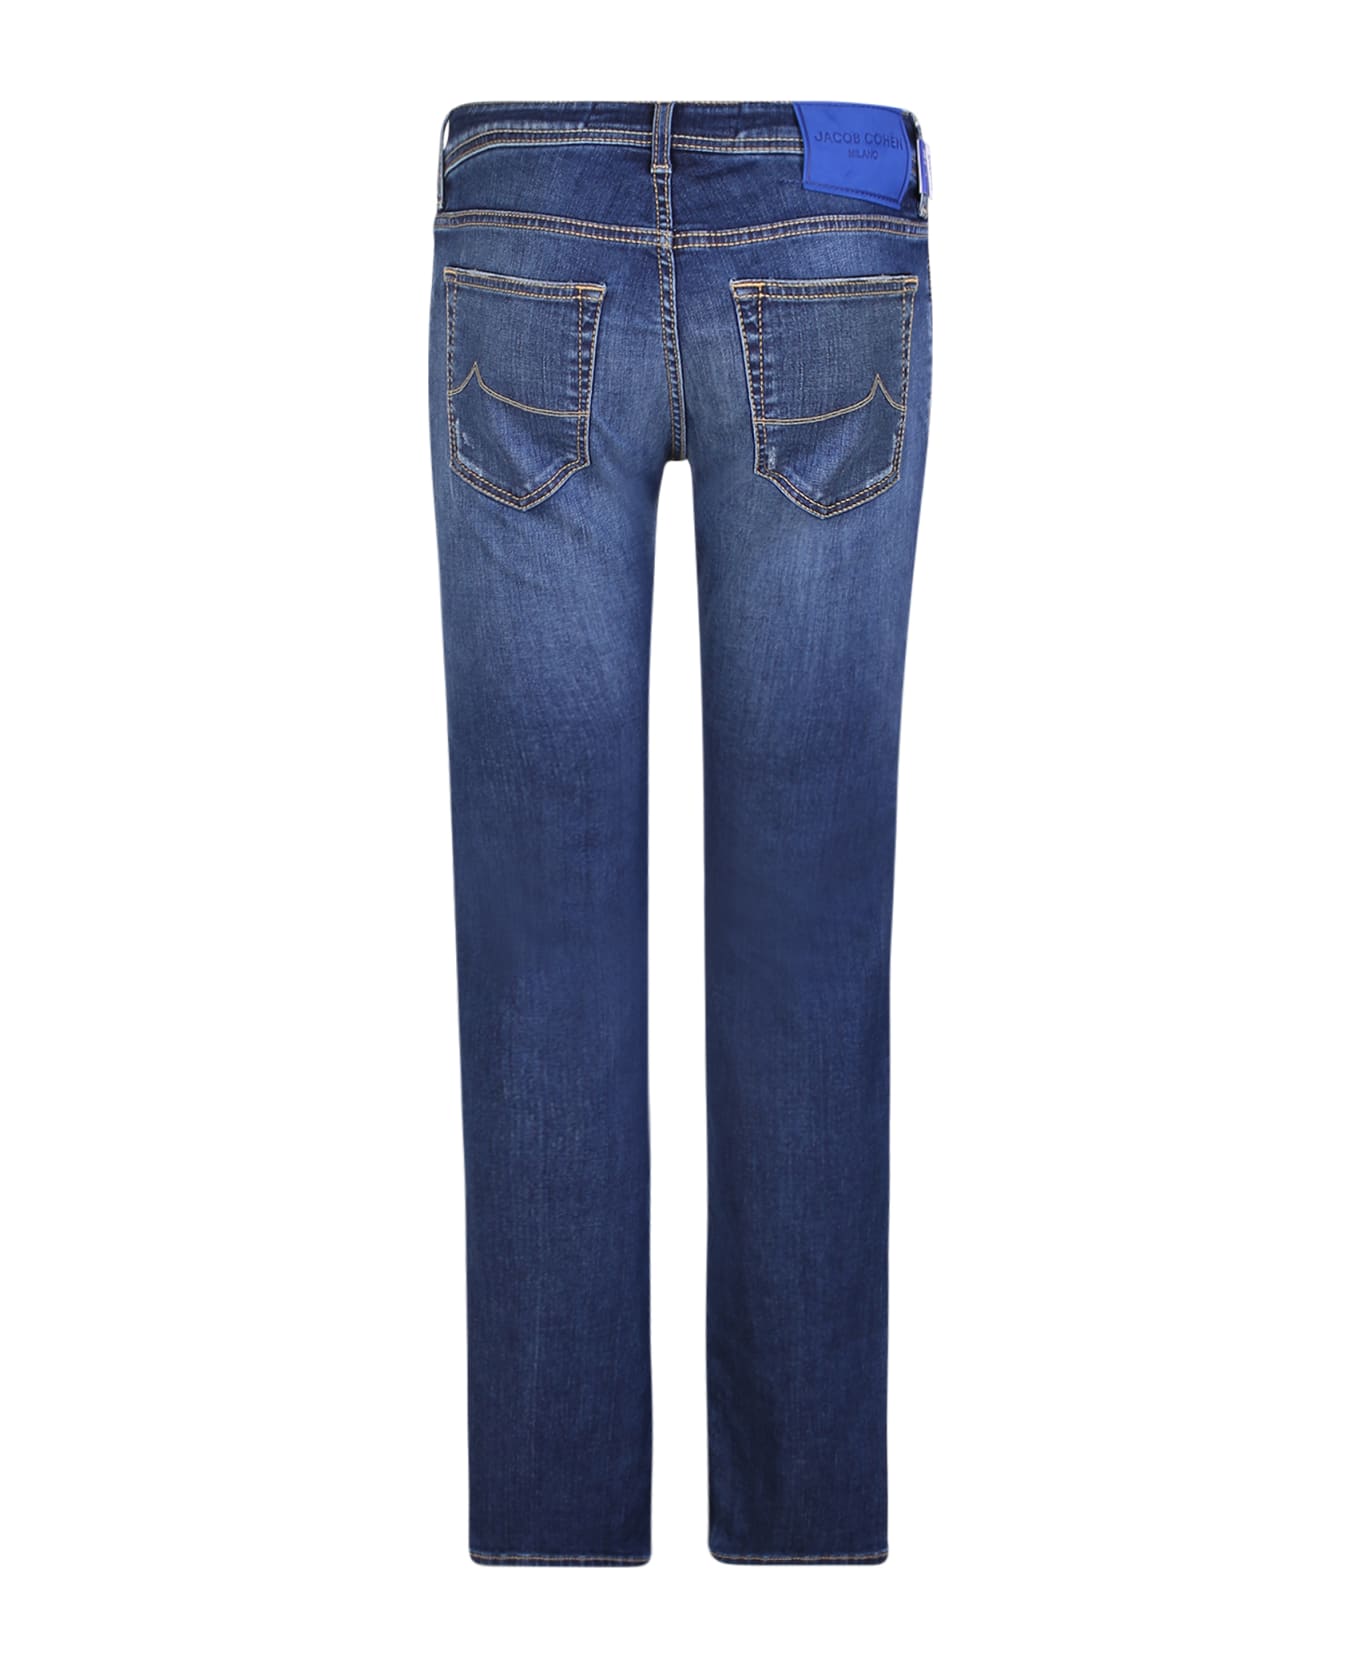 Jacob Cohen Slim Cut Blue Jeans - Blue